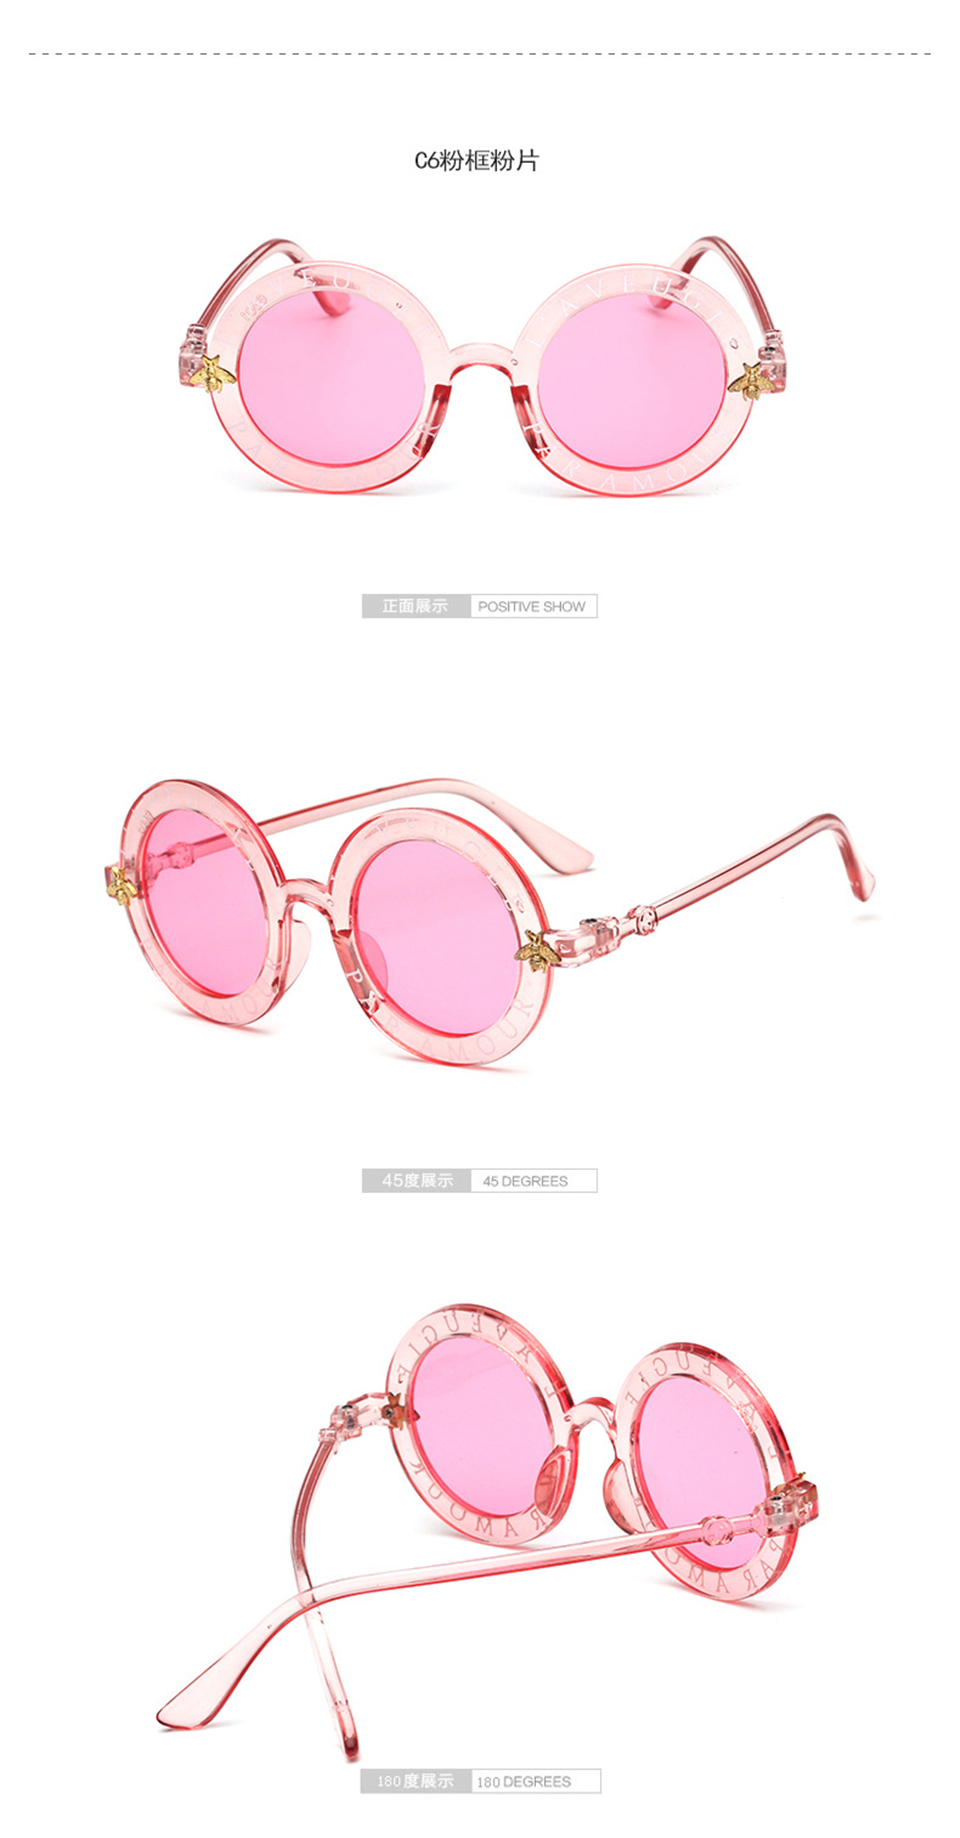 Child-2019-NEW-designer-Round-Frame-Sunglasses-Kids-Gold-bee-Children-Glasses-UV400-Baby-Summer-Eyeg-32978959208